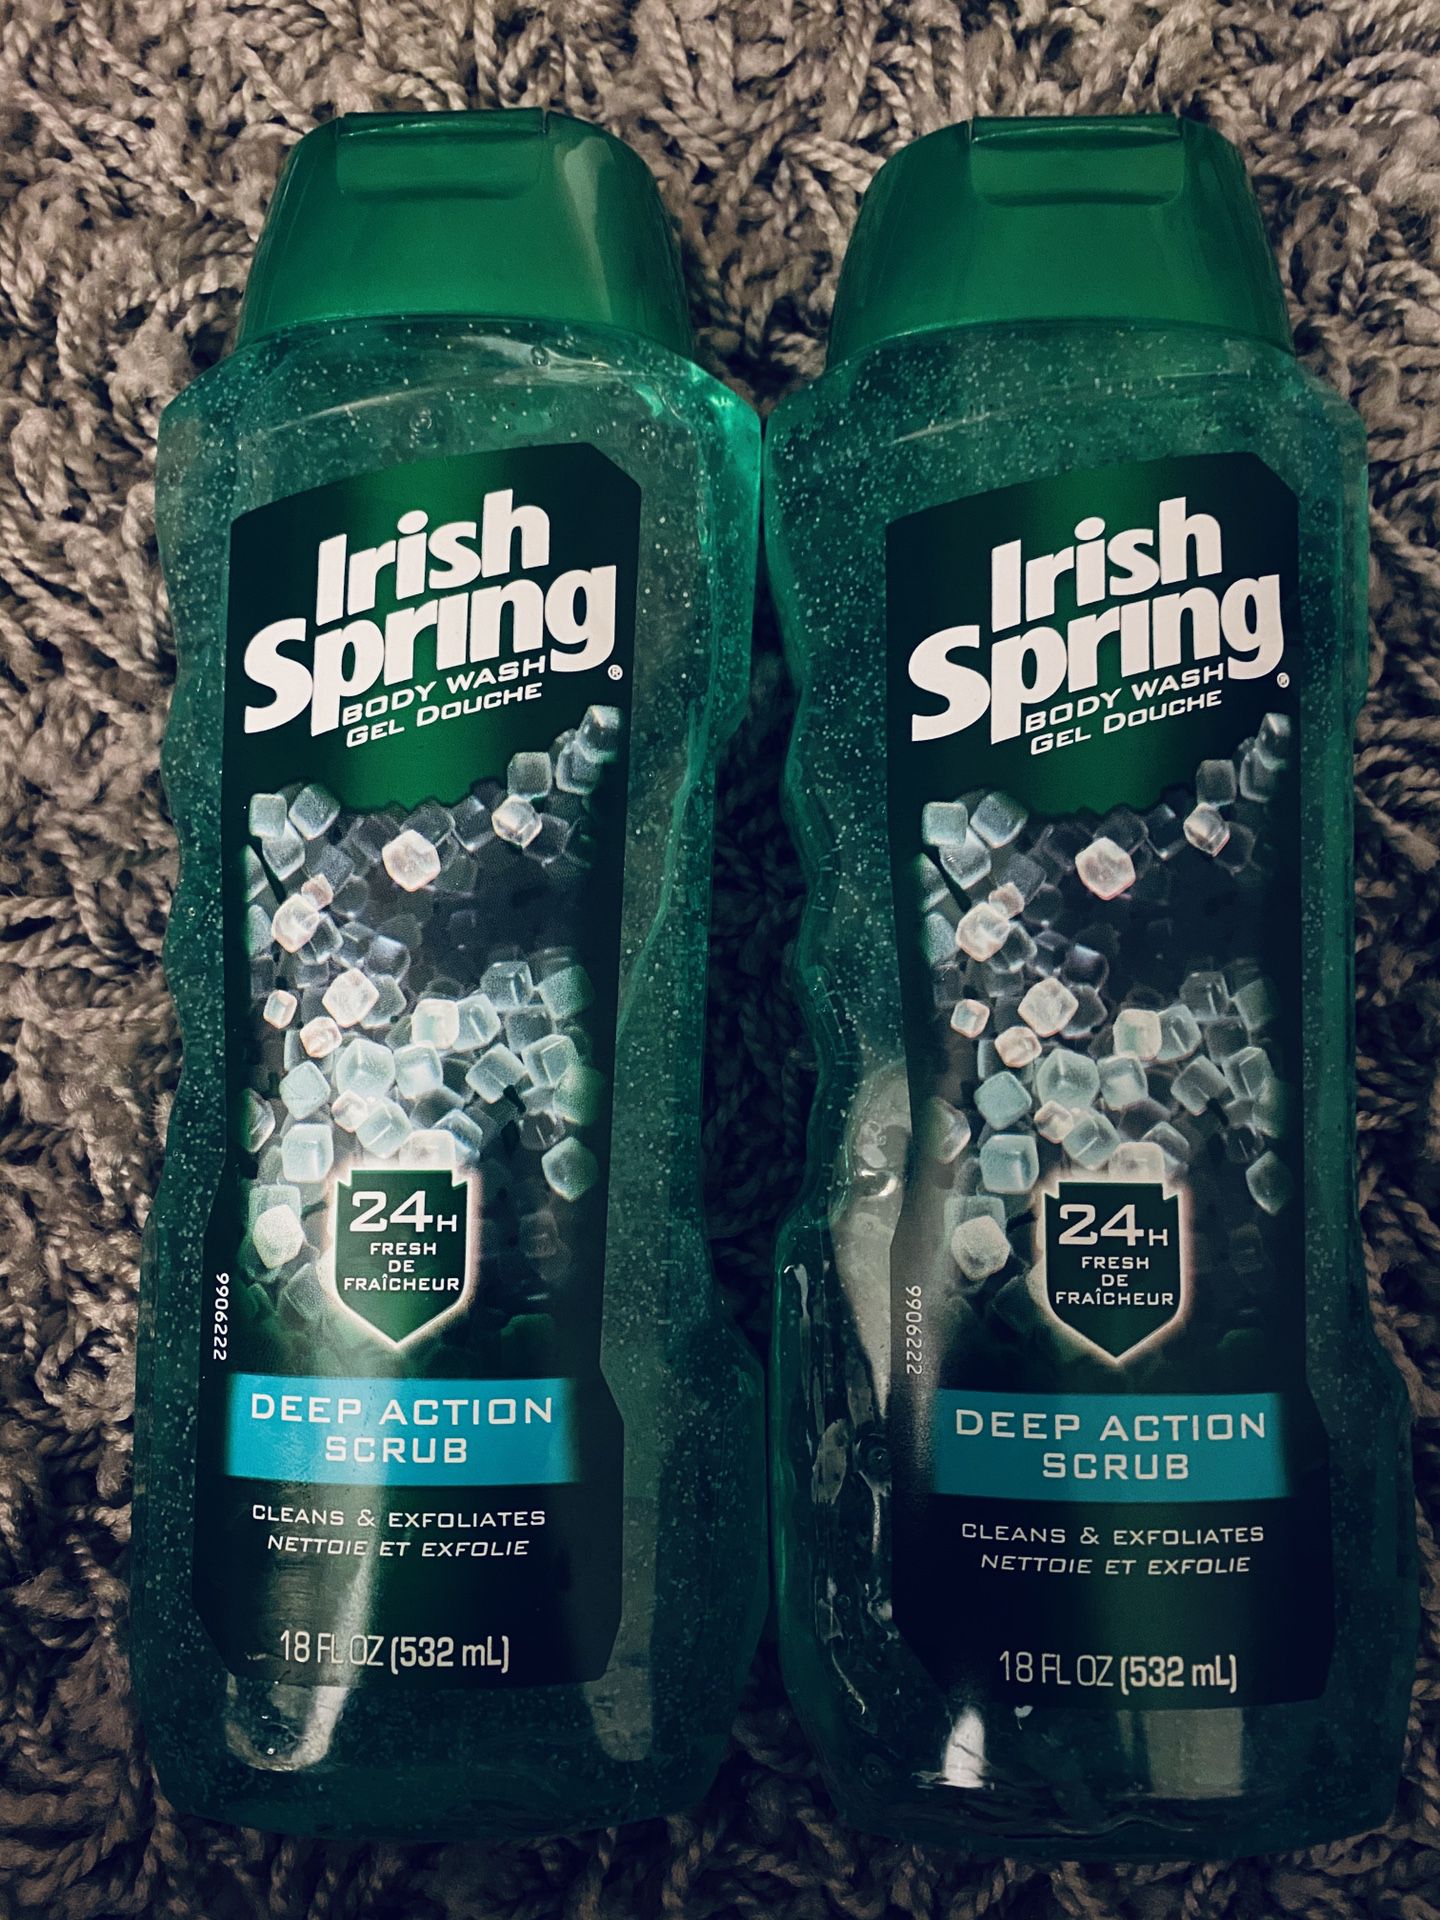 Irish spring body wash